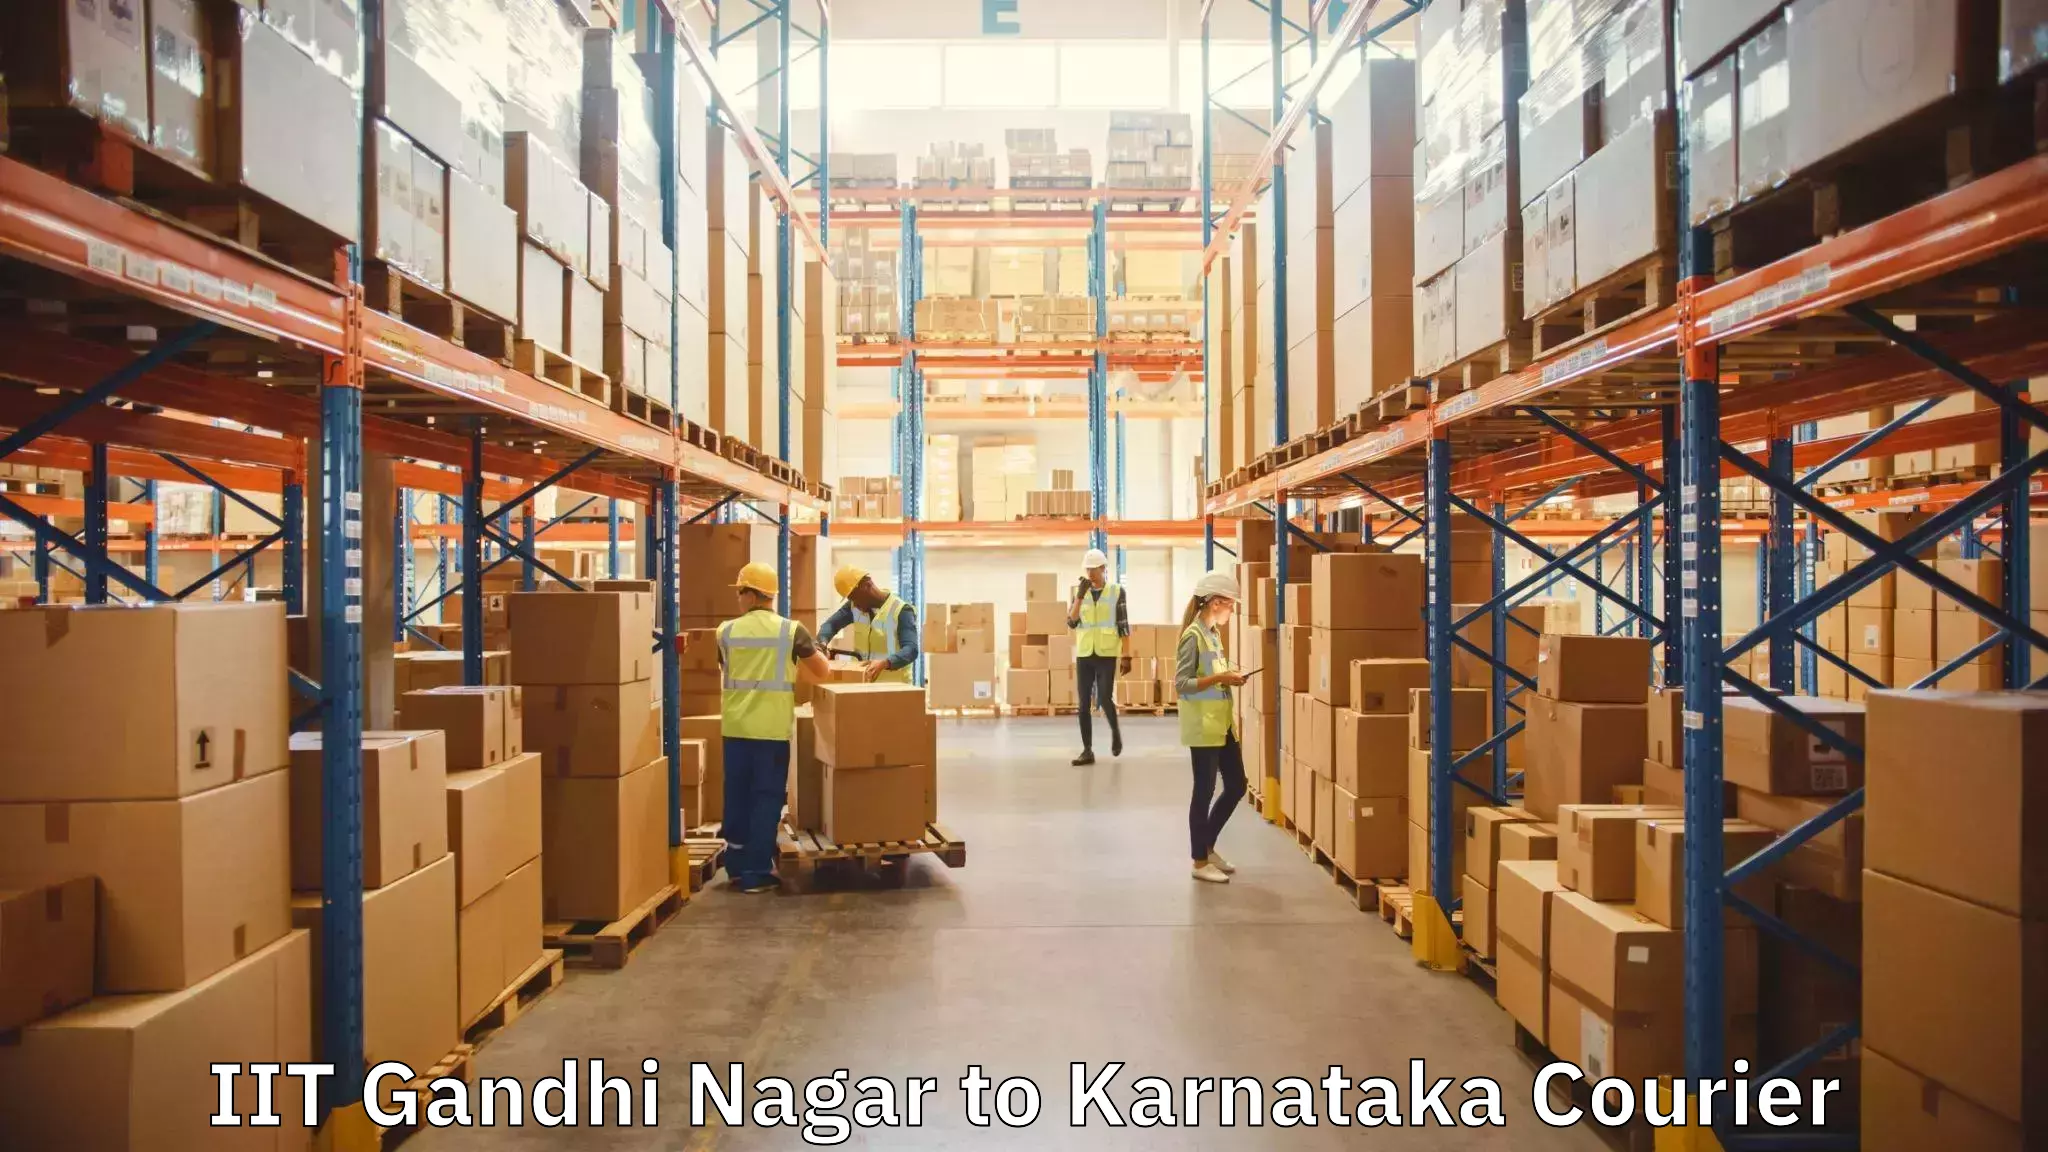 Furniture moving solutions IIT Gandhi Nagar to Karnataka